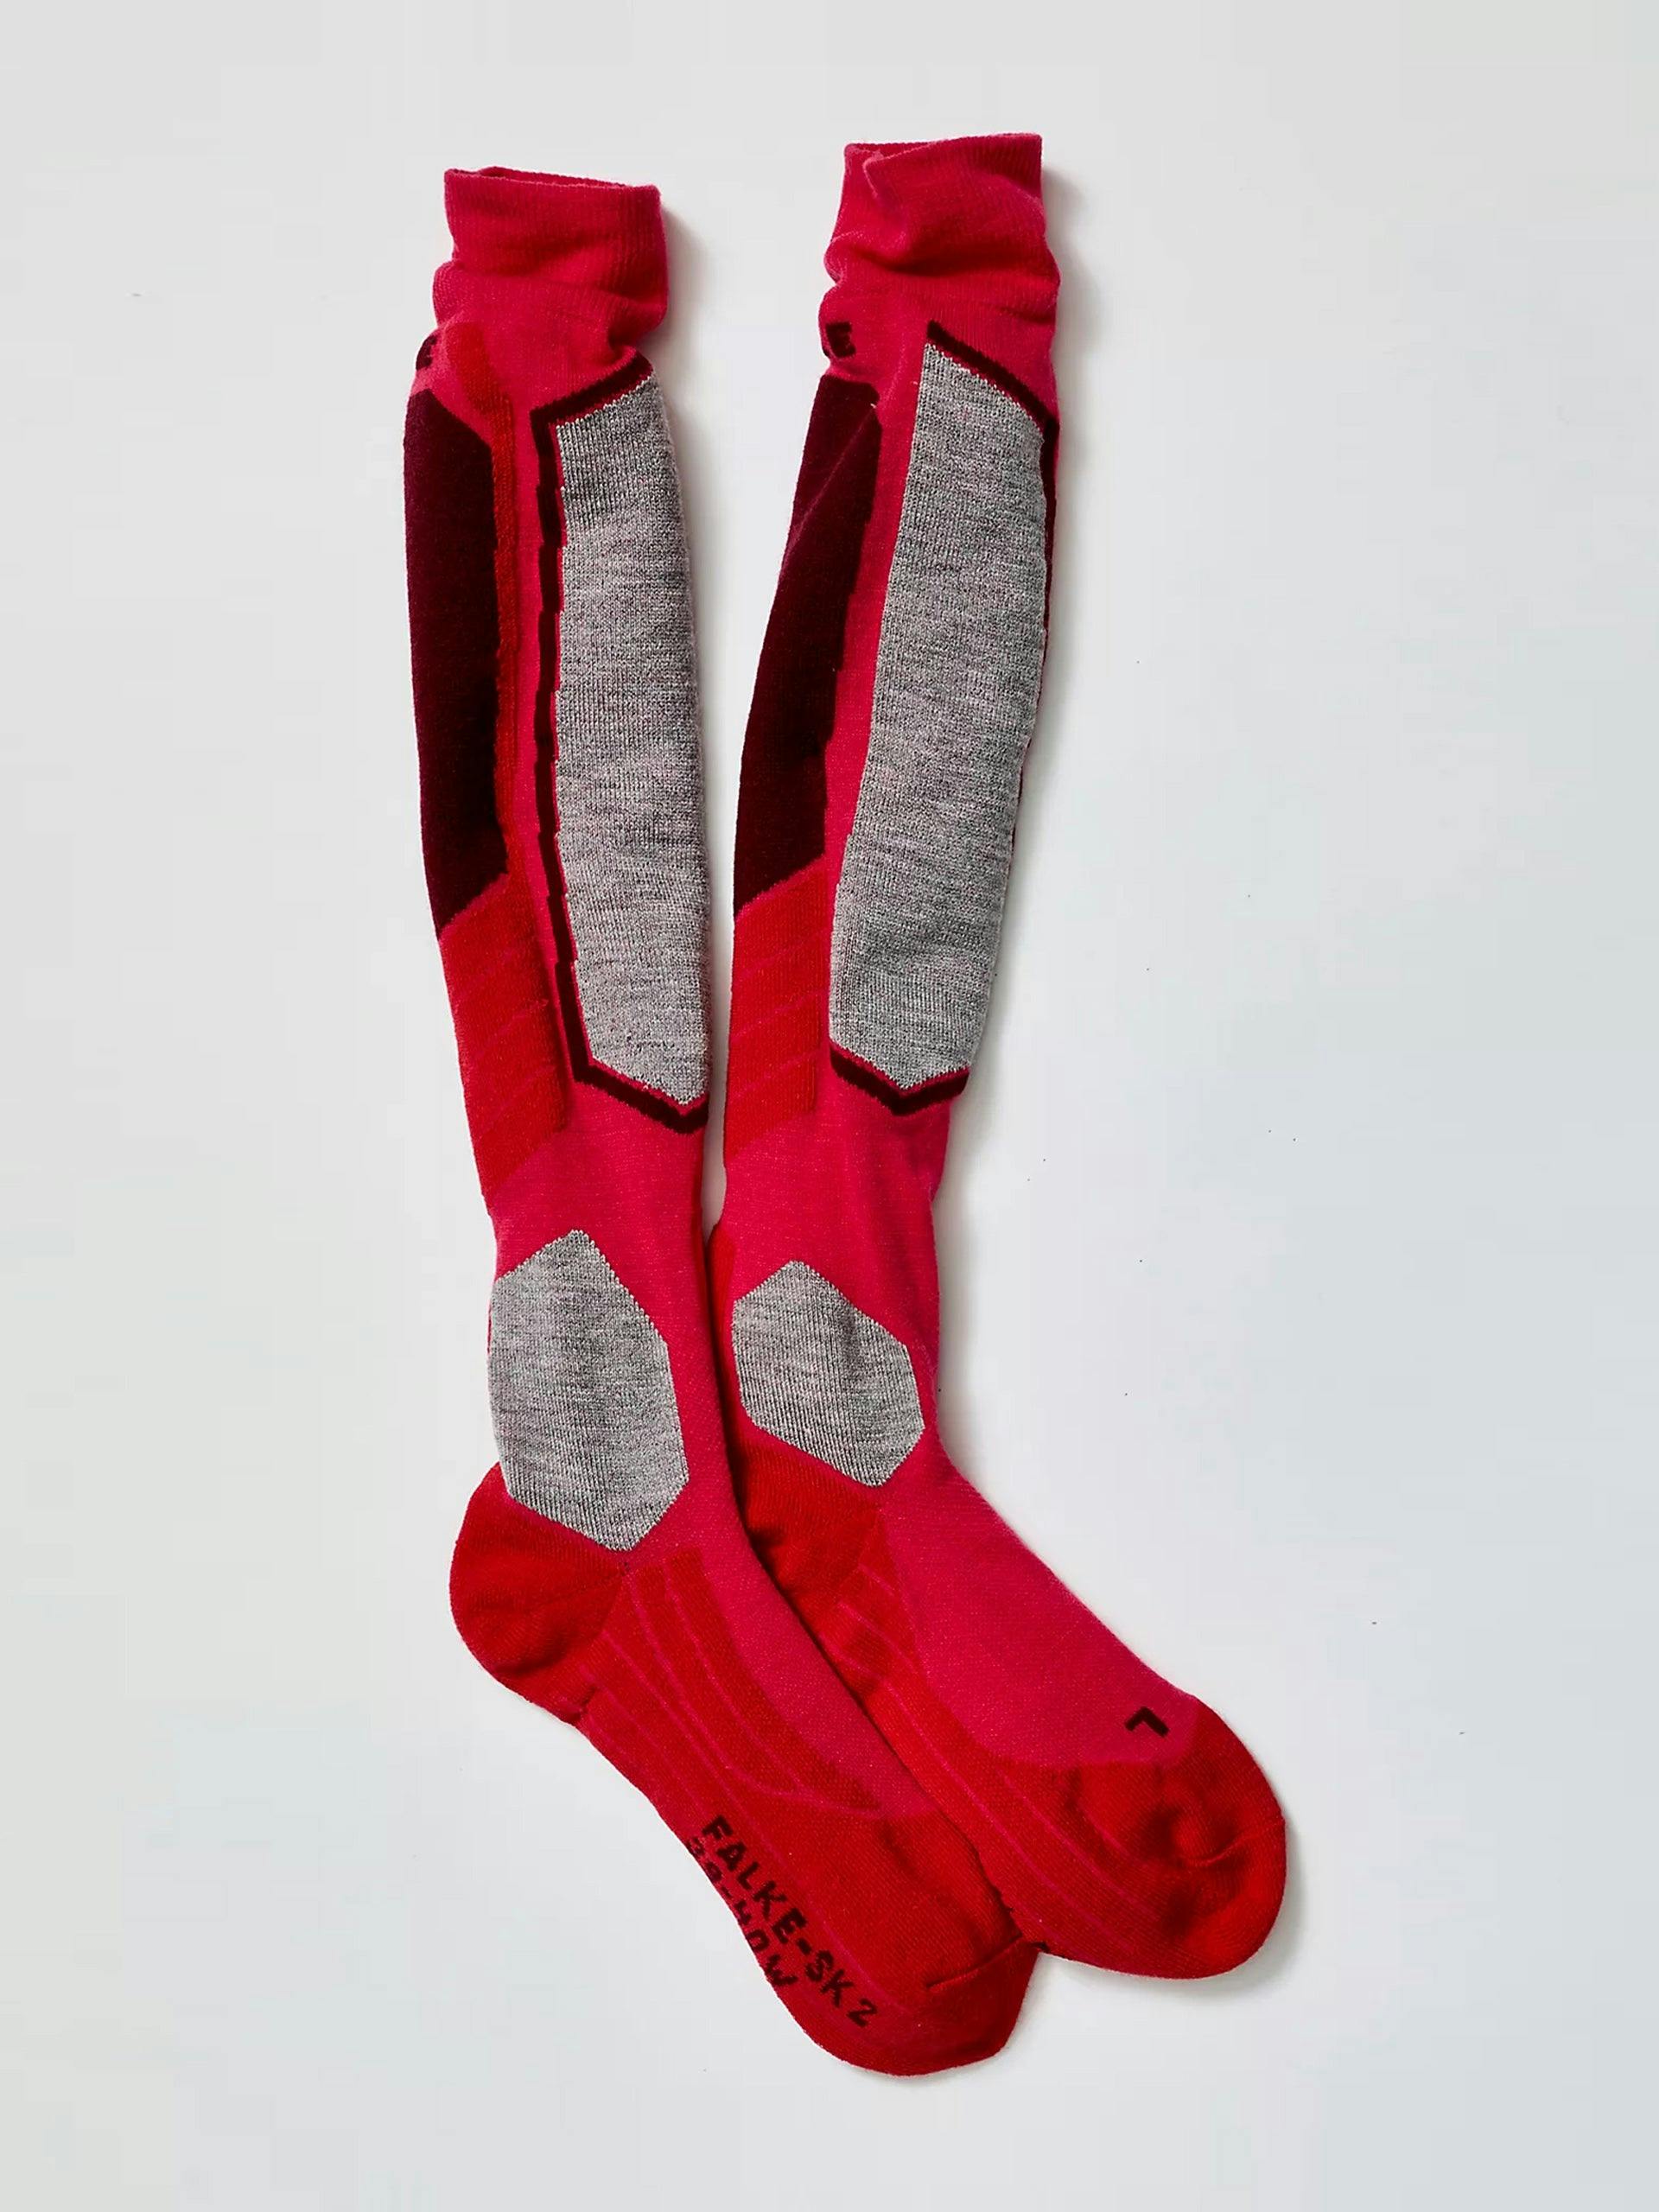 Ski socks